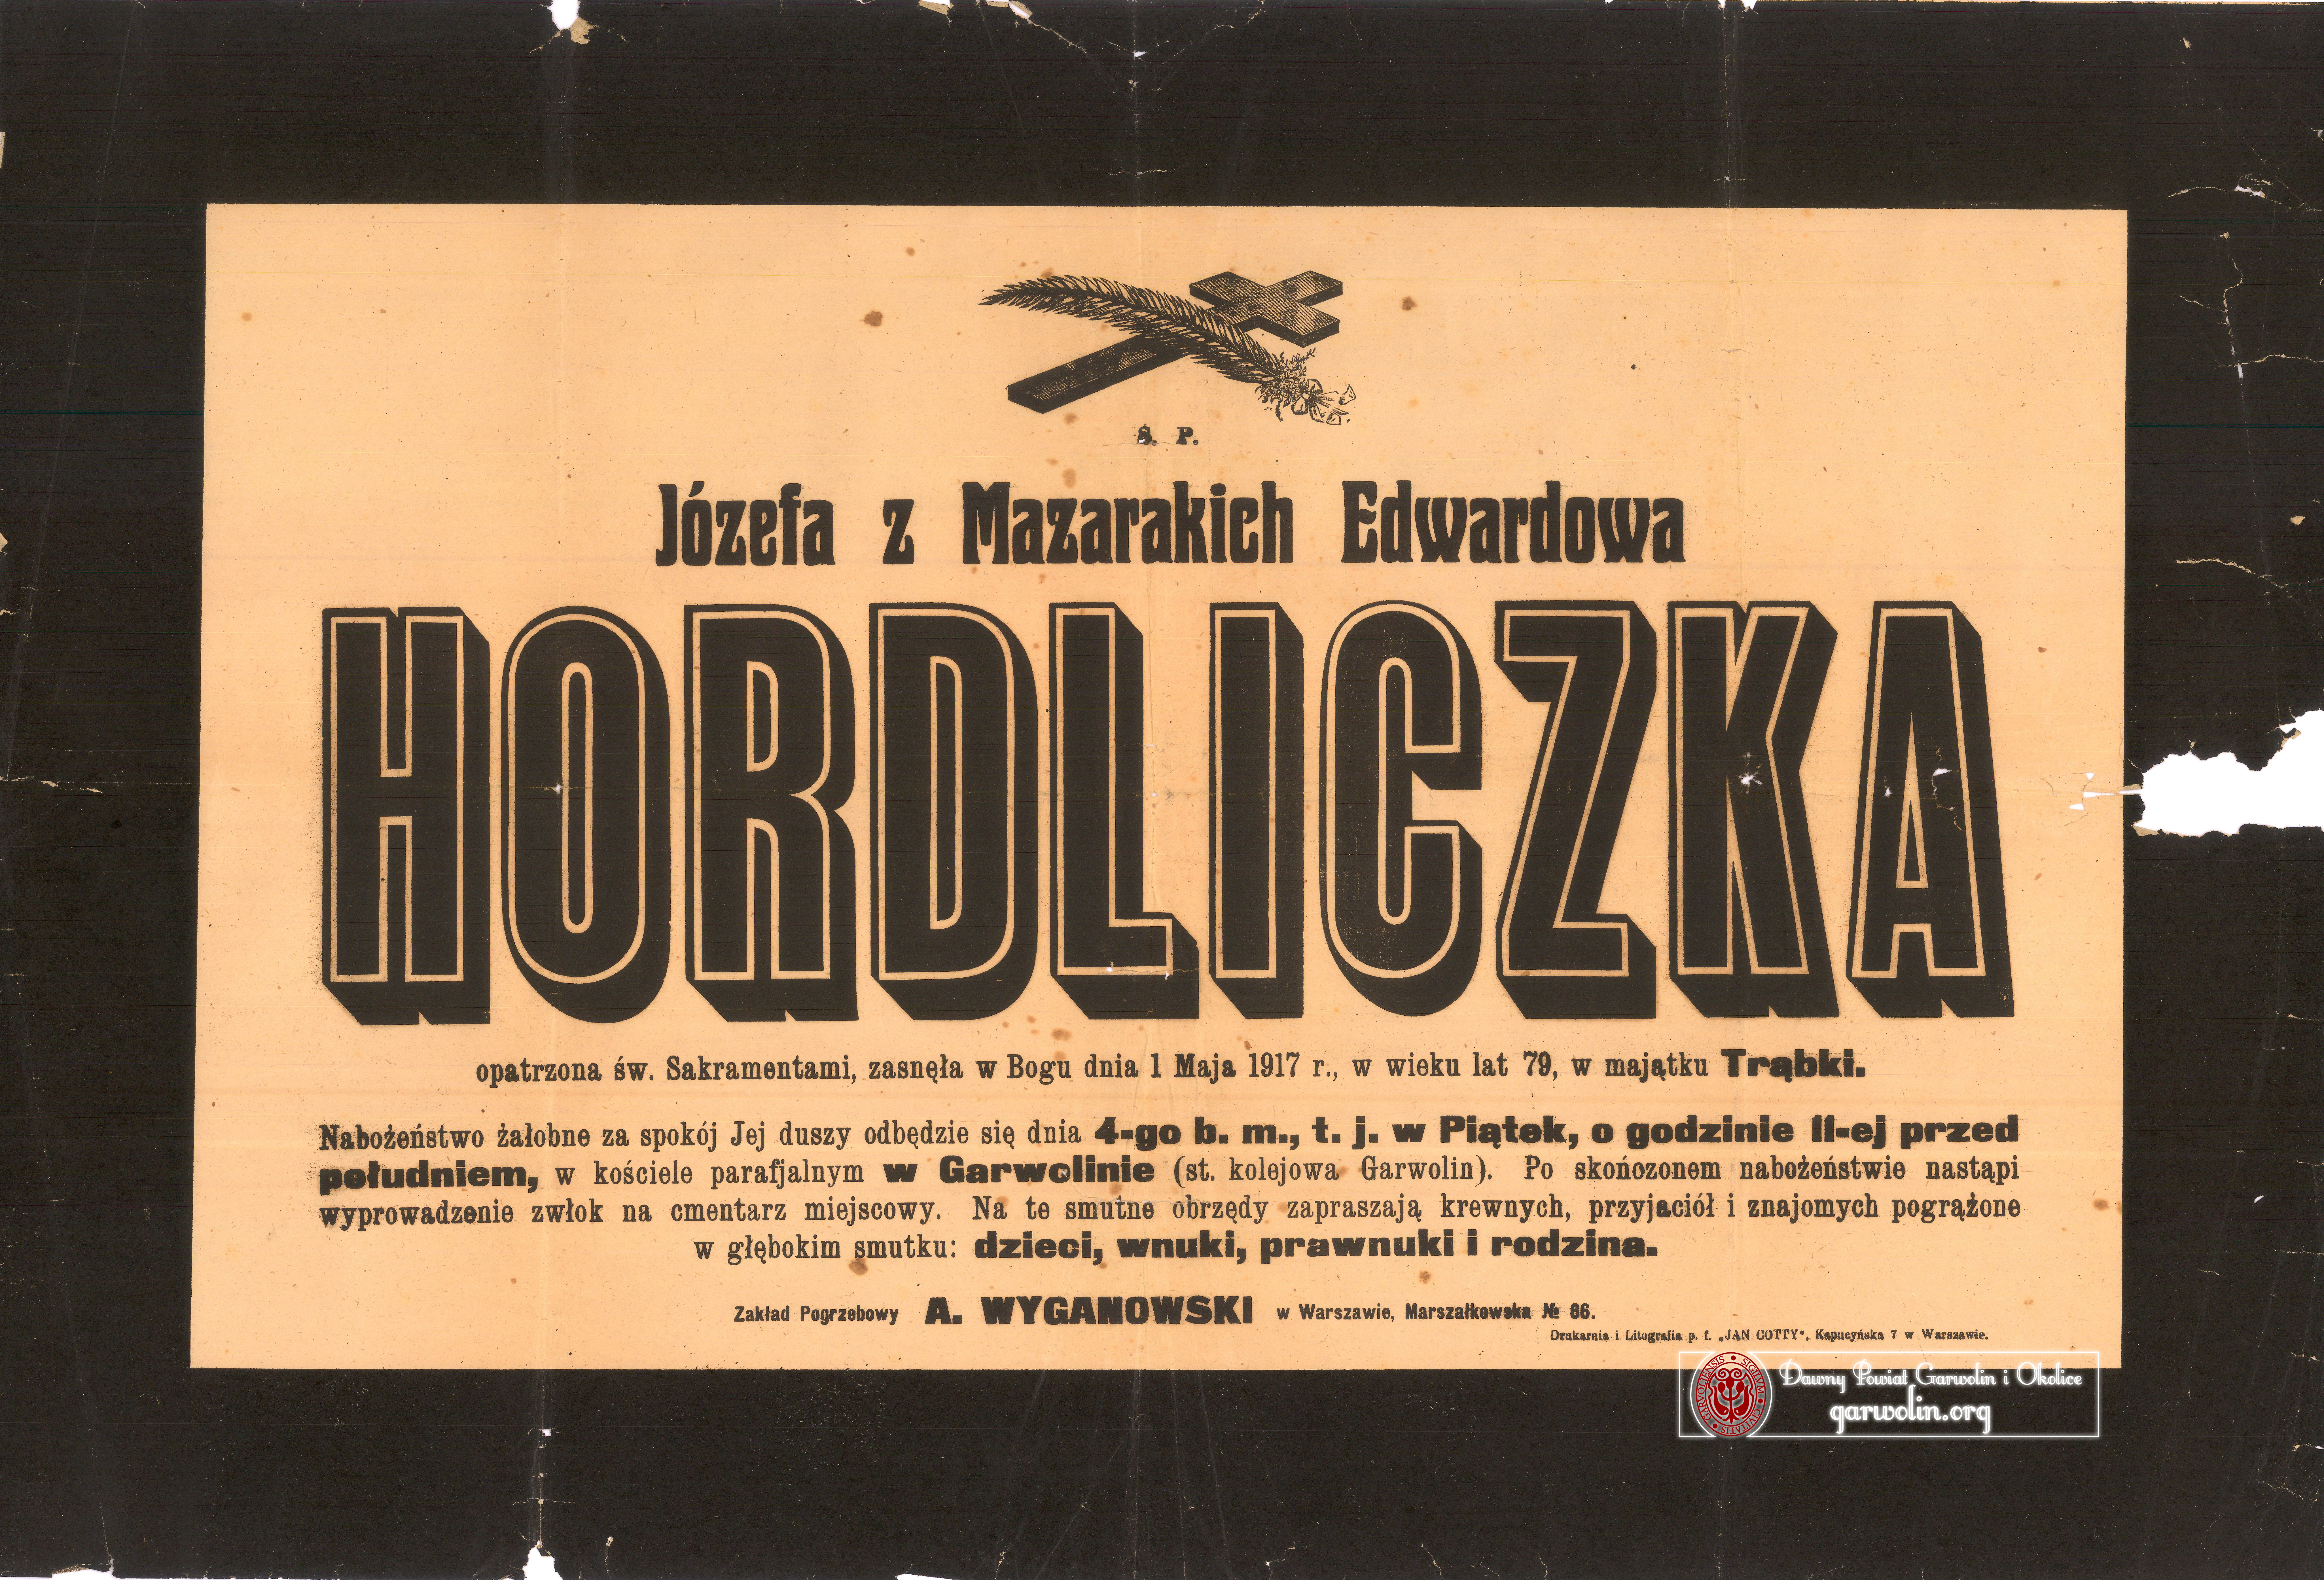 Nekrolog -  Józefa Hordliczka z d. Mazaraki h. Newlin (1837-1917)